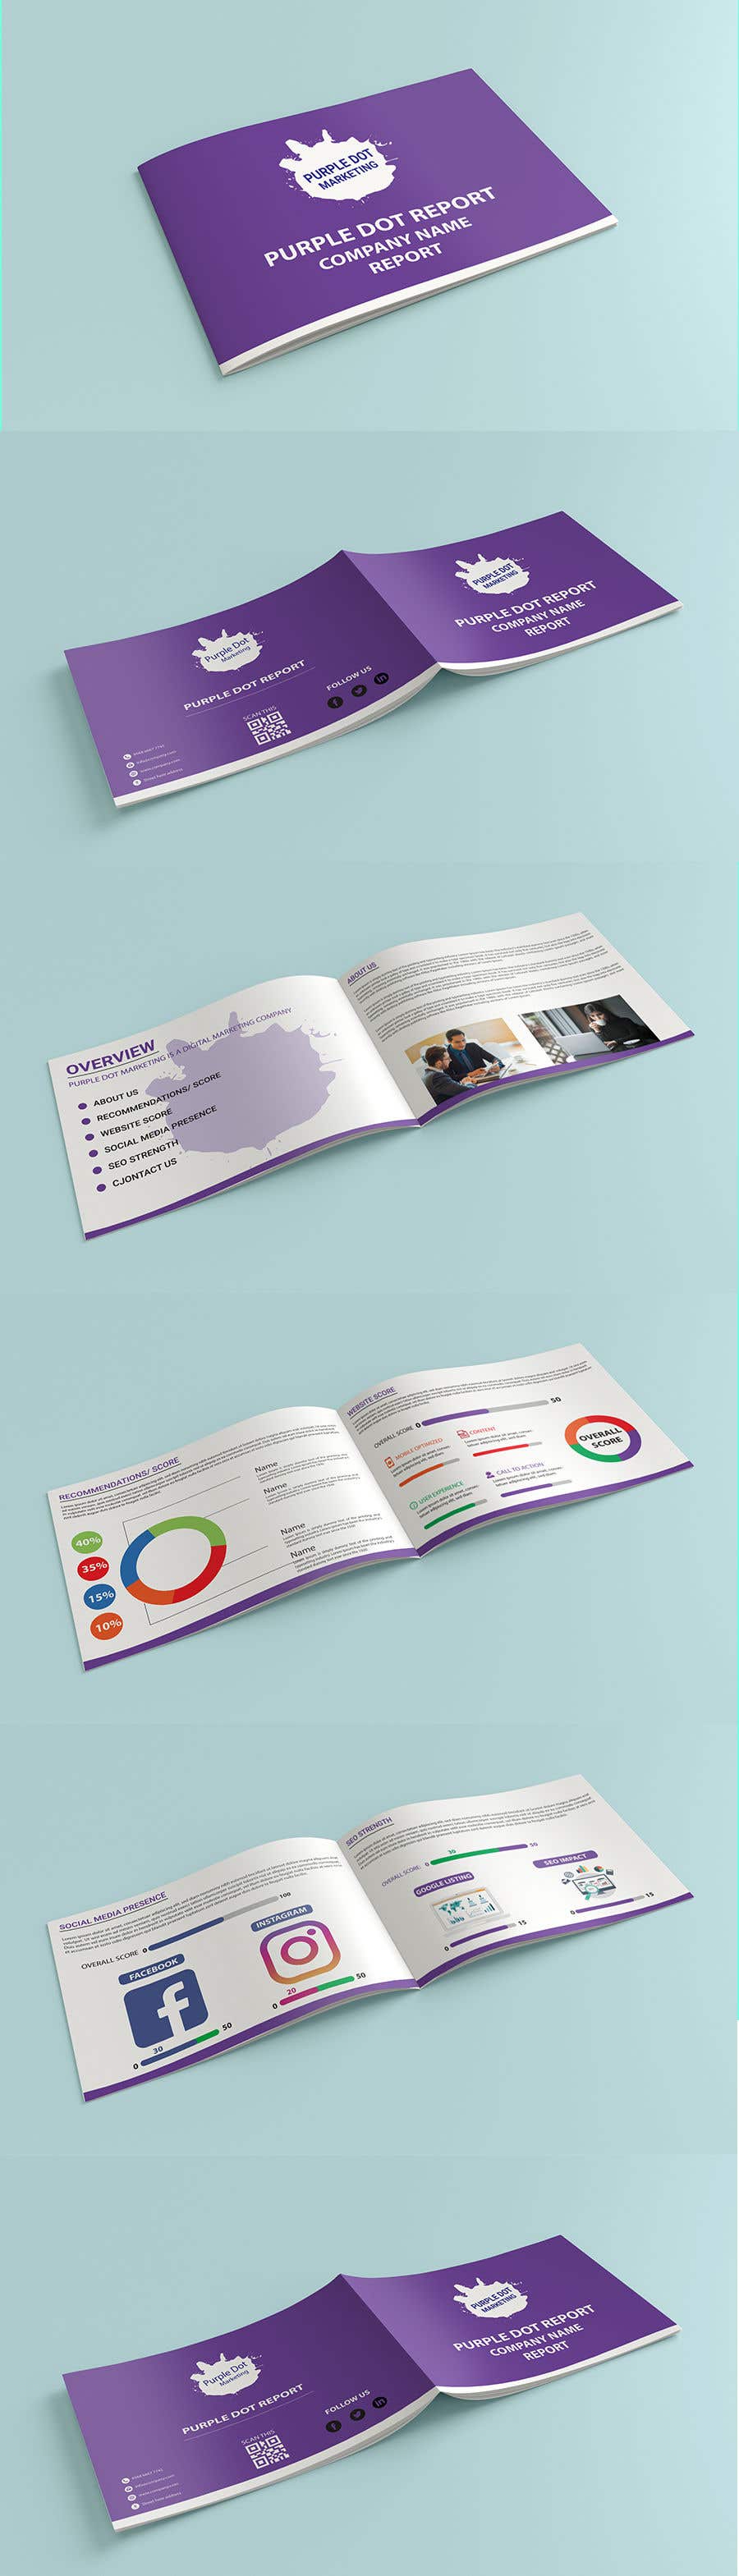 Penyertaan Peraduan #16 untuk                                                 Design a Brochure- "Purple Dot Report"
                                            